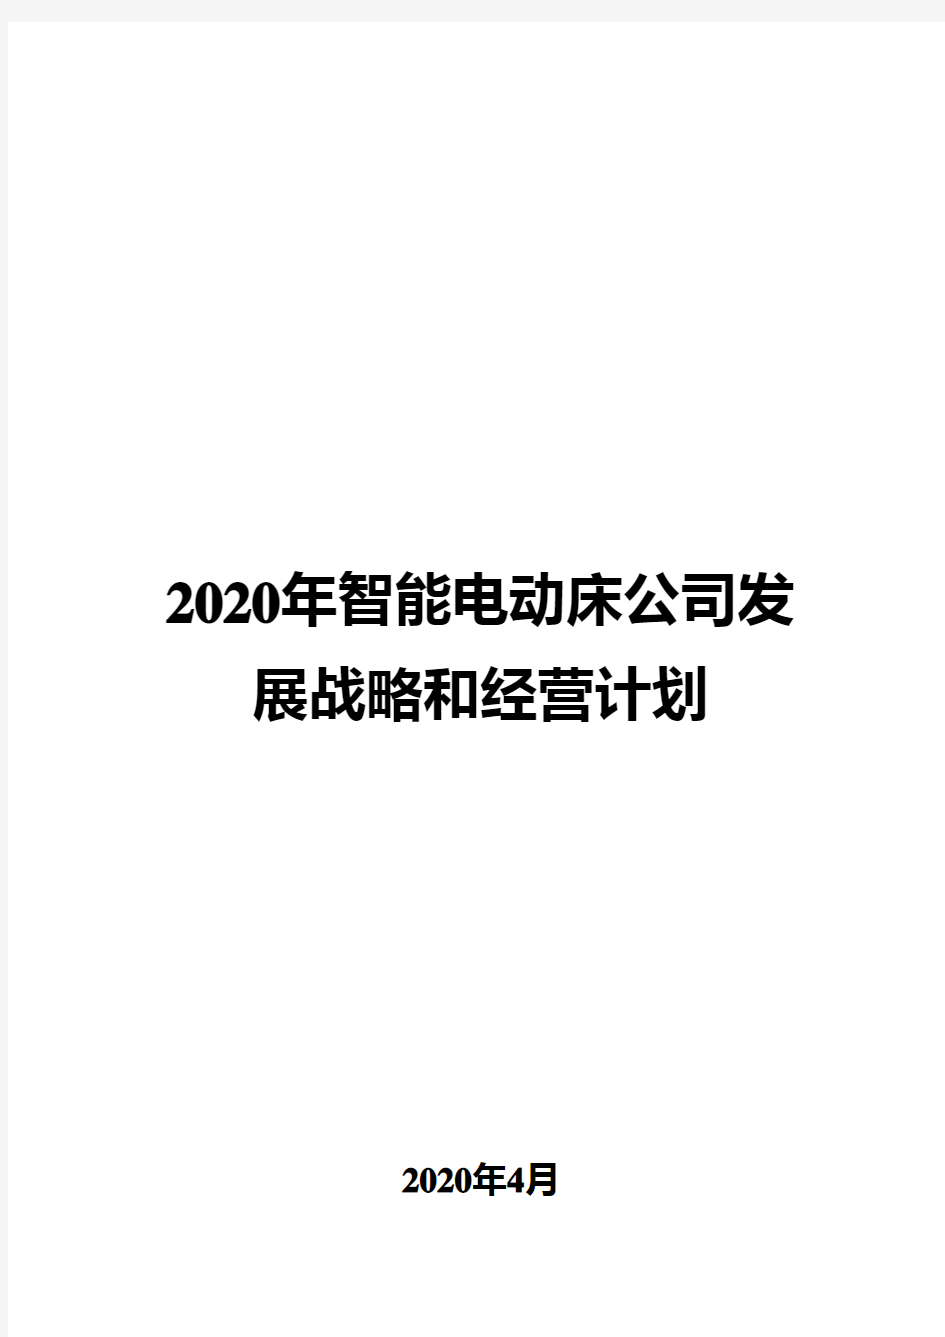 2020年智能电动床公司发展战略和经营计划